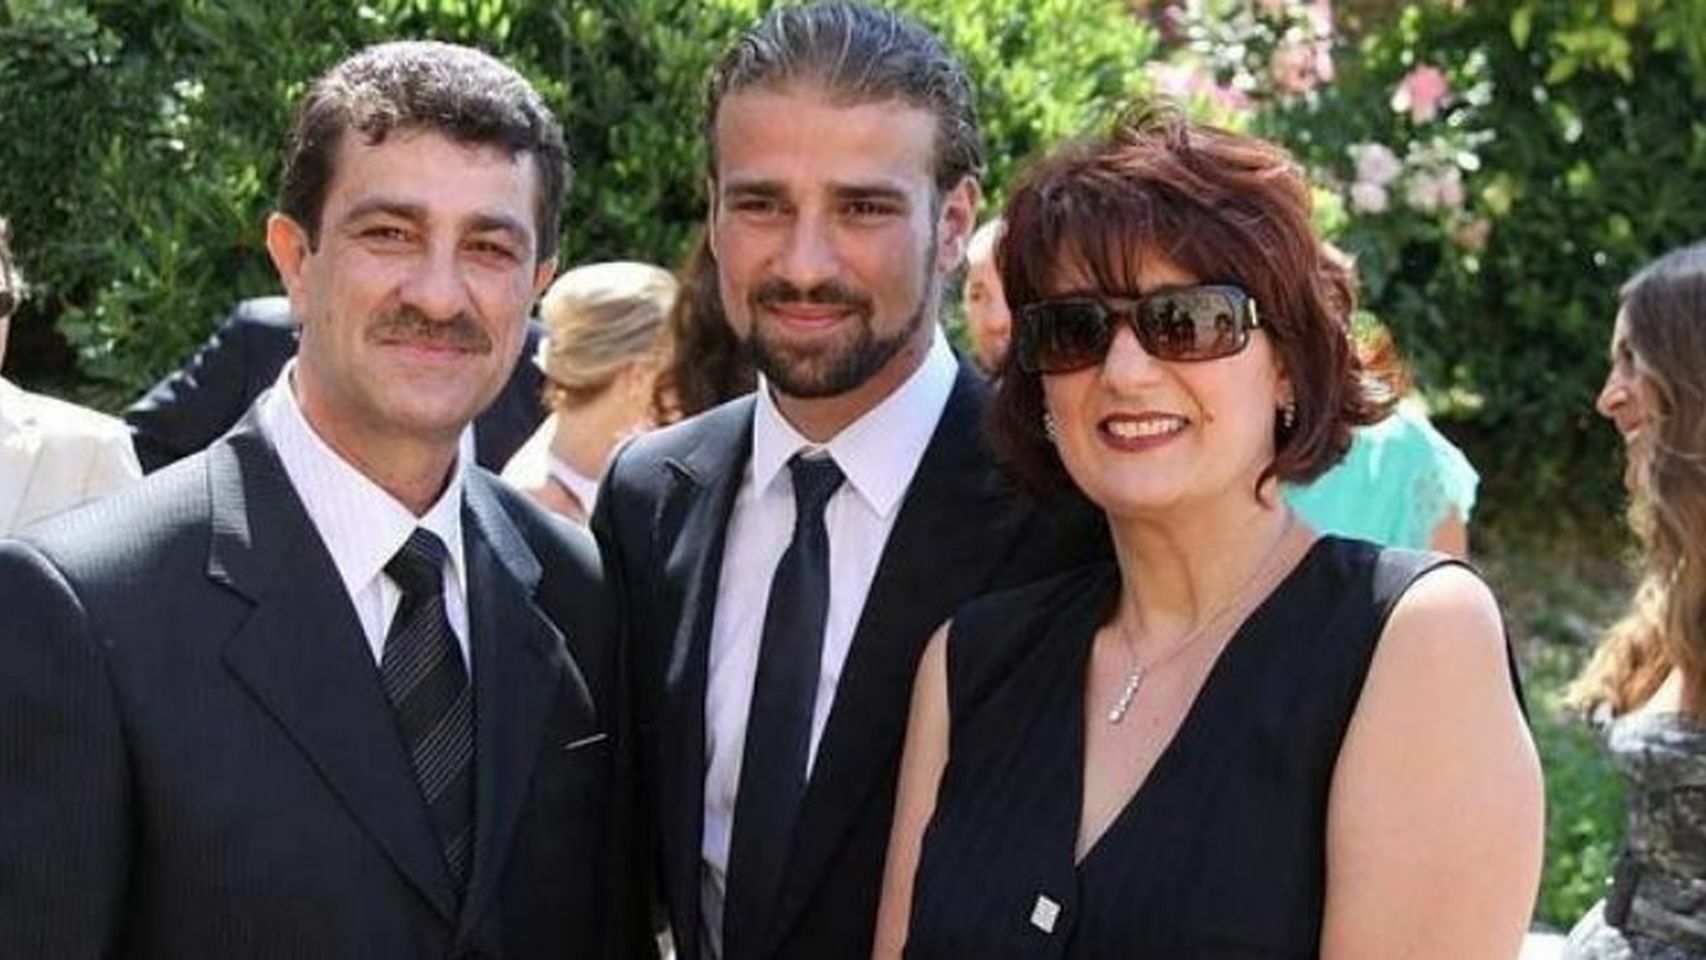 Mario Biondo, en el centro, junto a sus padres.